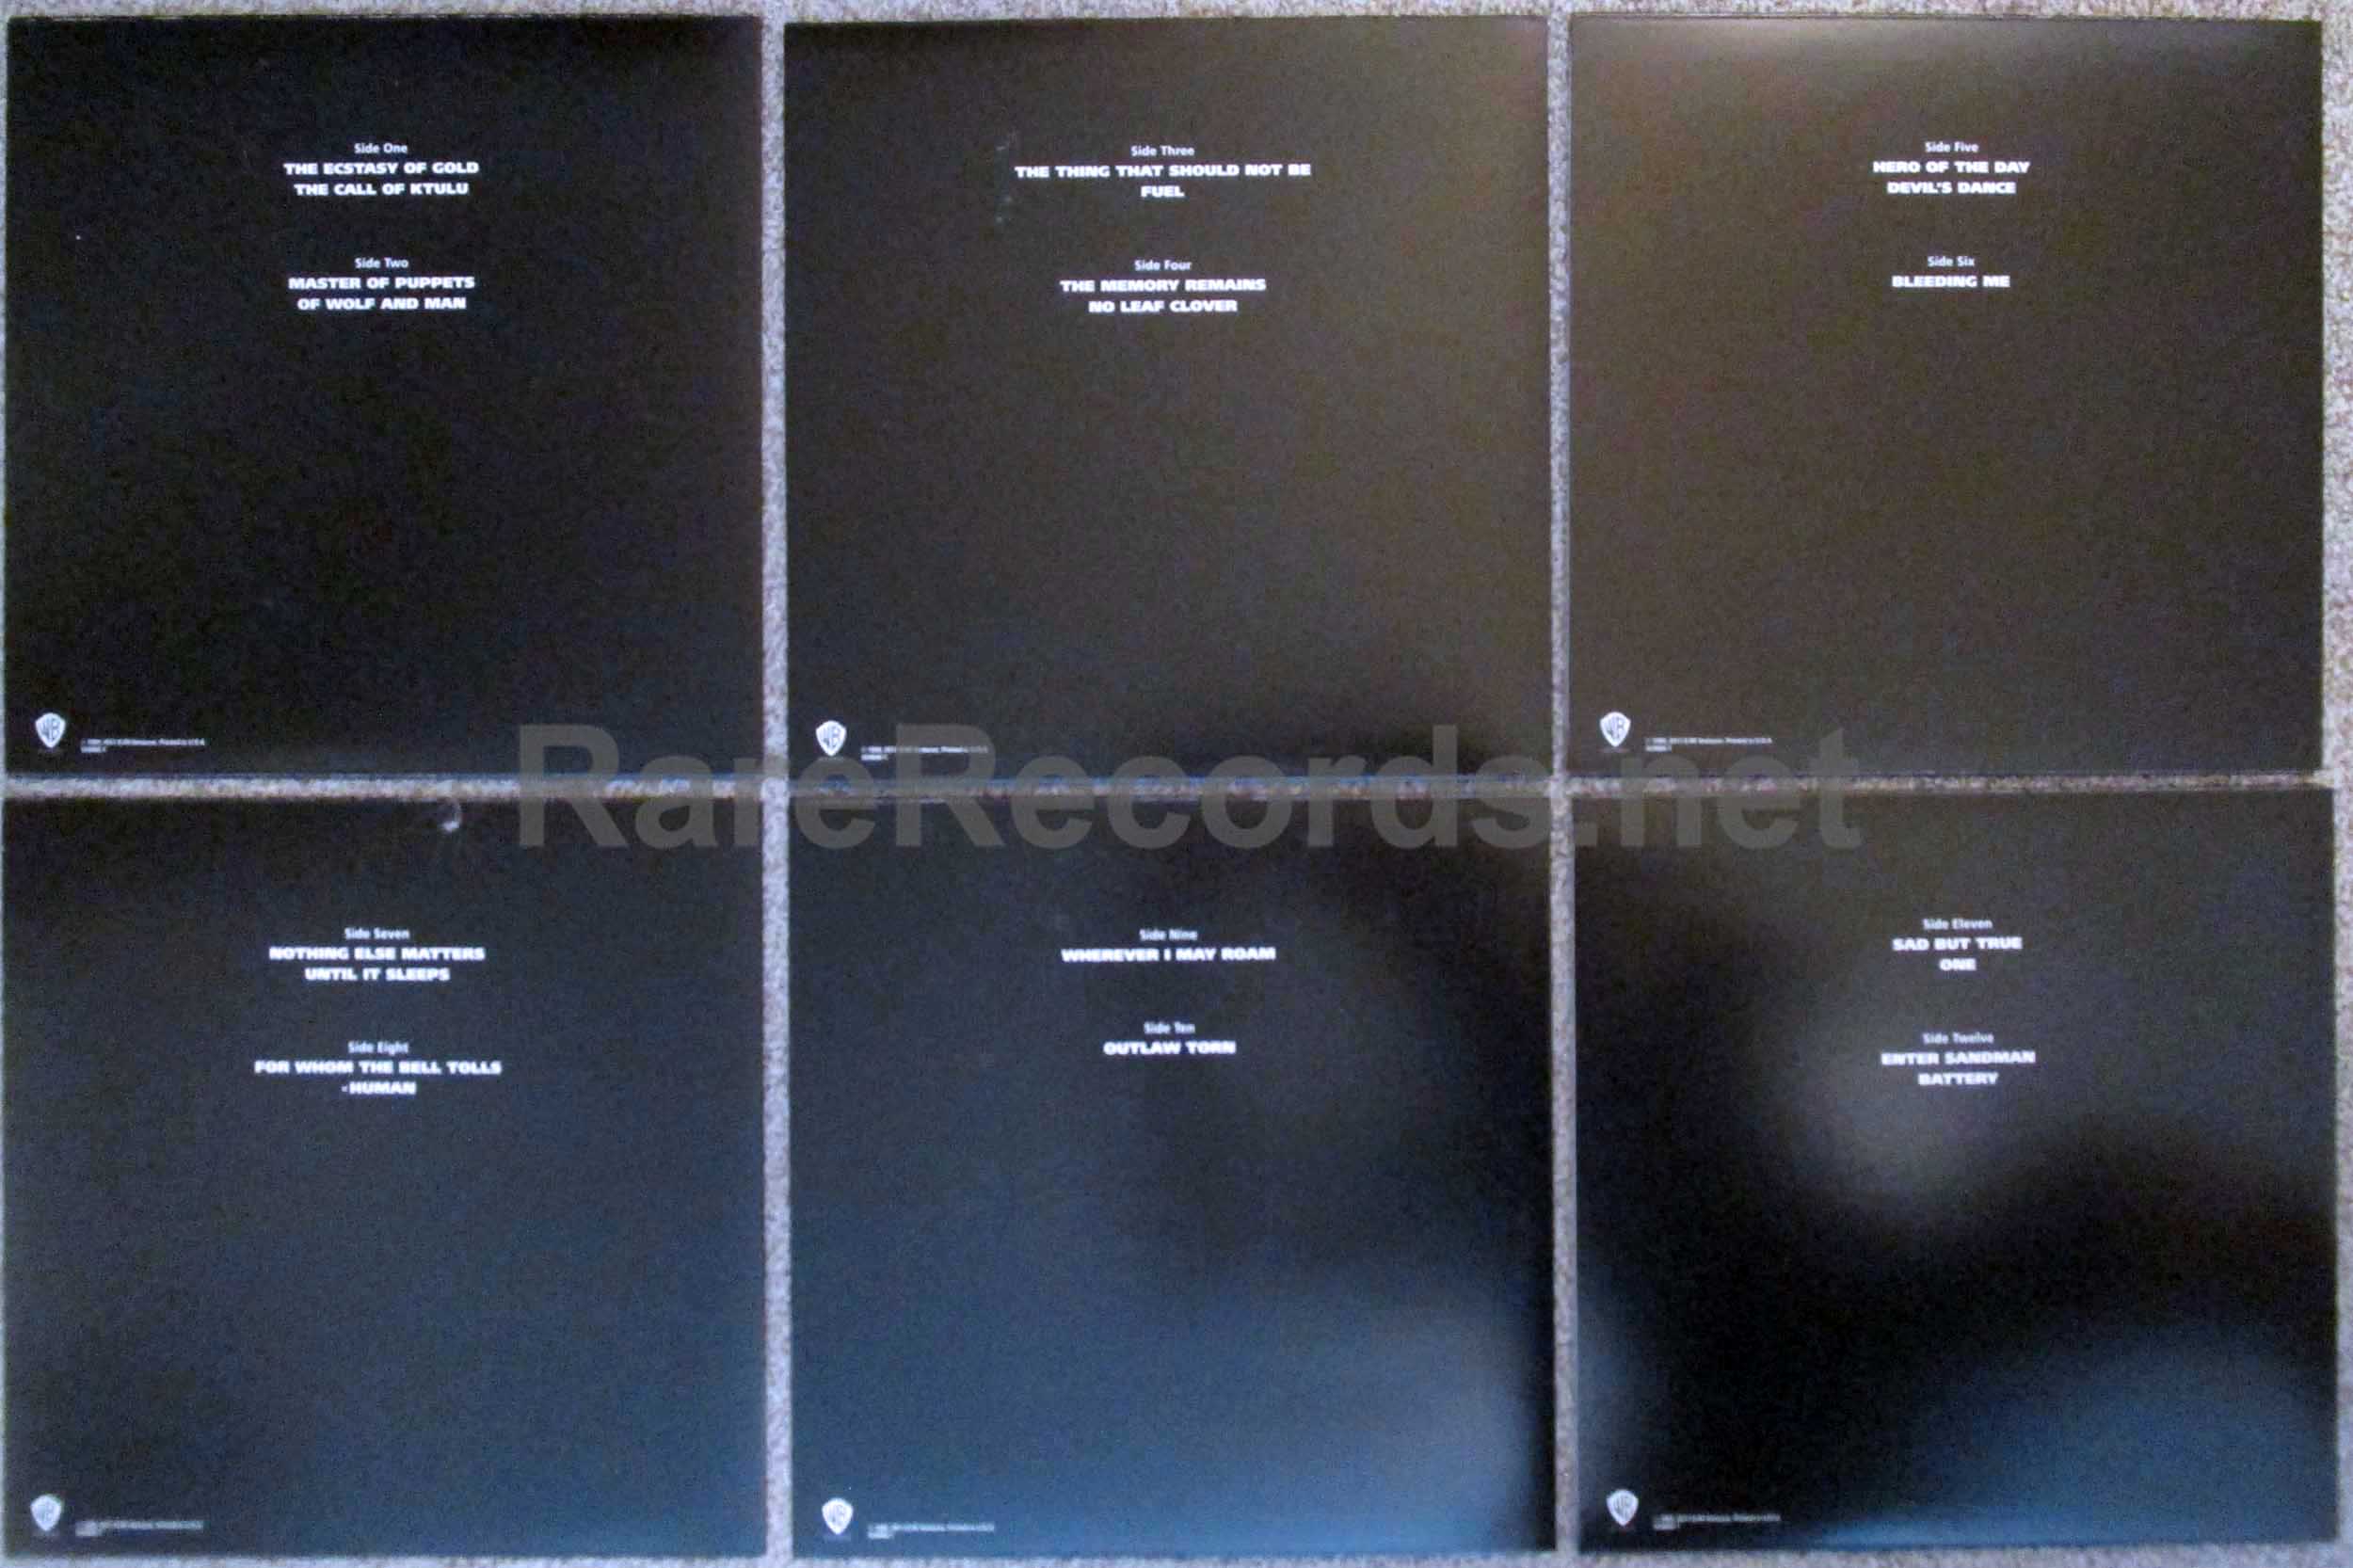  VINYL S&M : Metallica: CDs & Vinyl